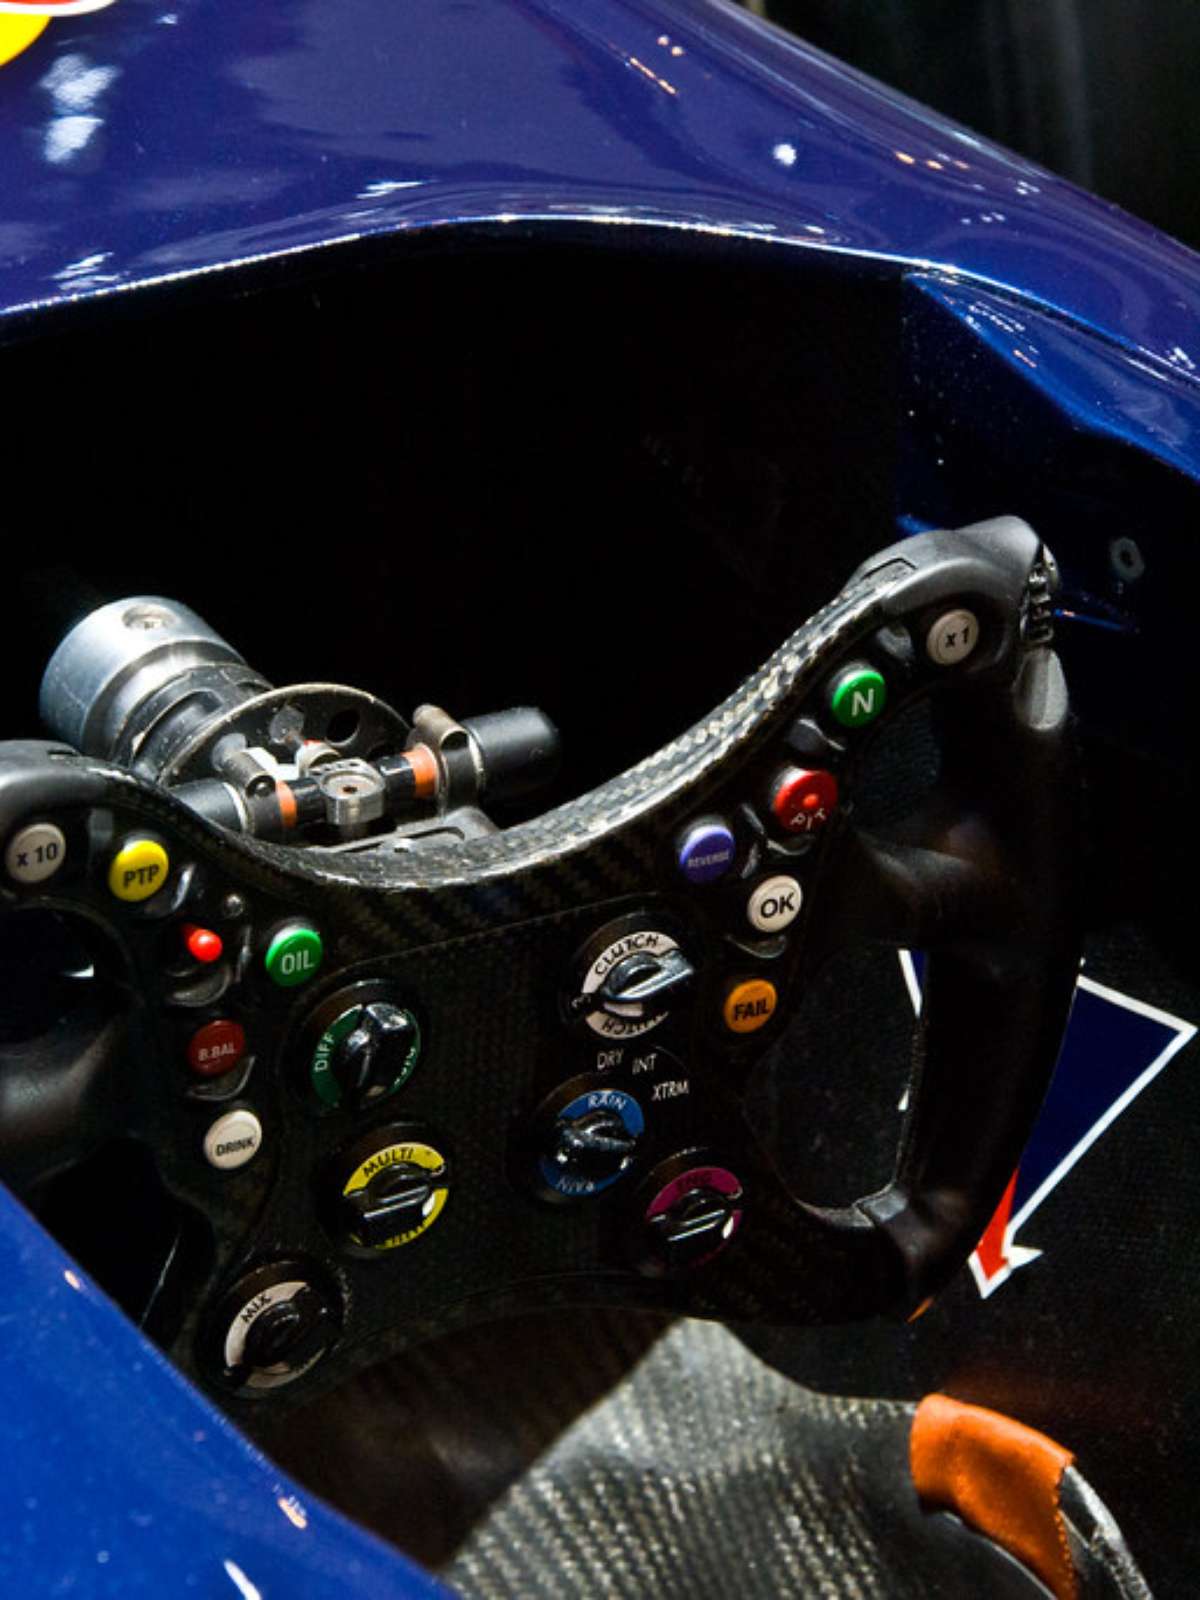 Quantas vezes os pilotos de F1 podem trocar os componentes dos carros?